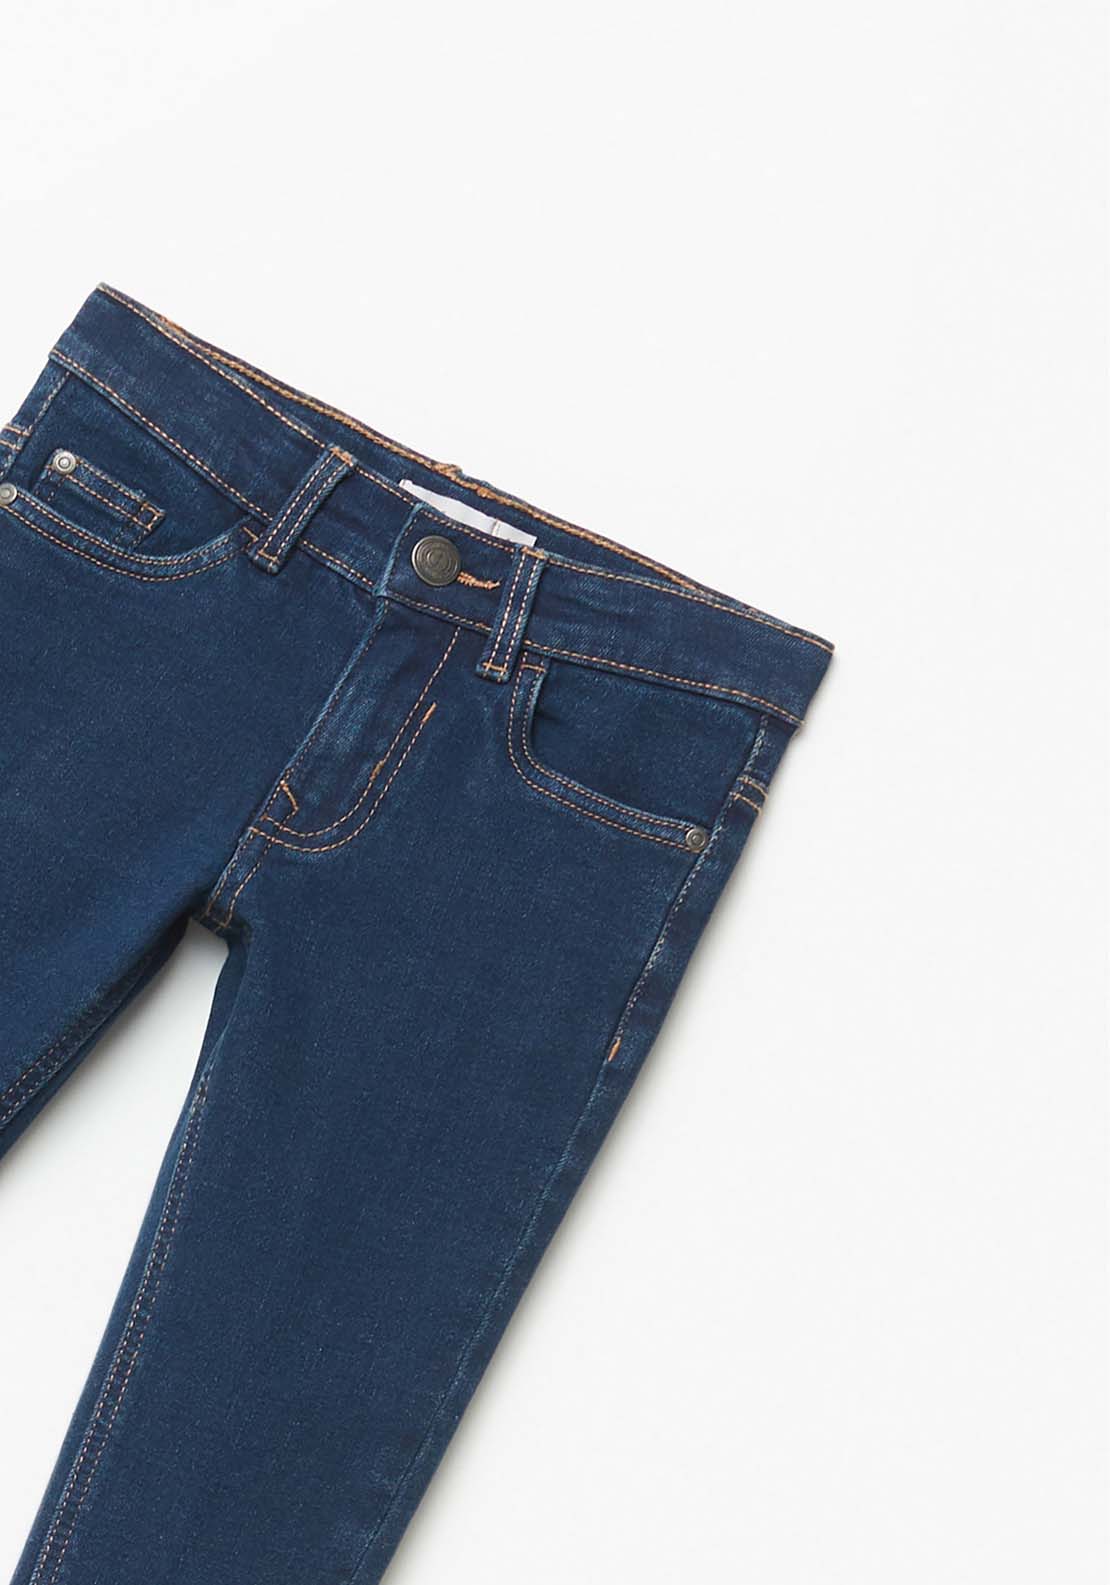 Sfera Denim Jeans - Dark Blue 2 Shaws Department Stores